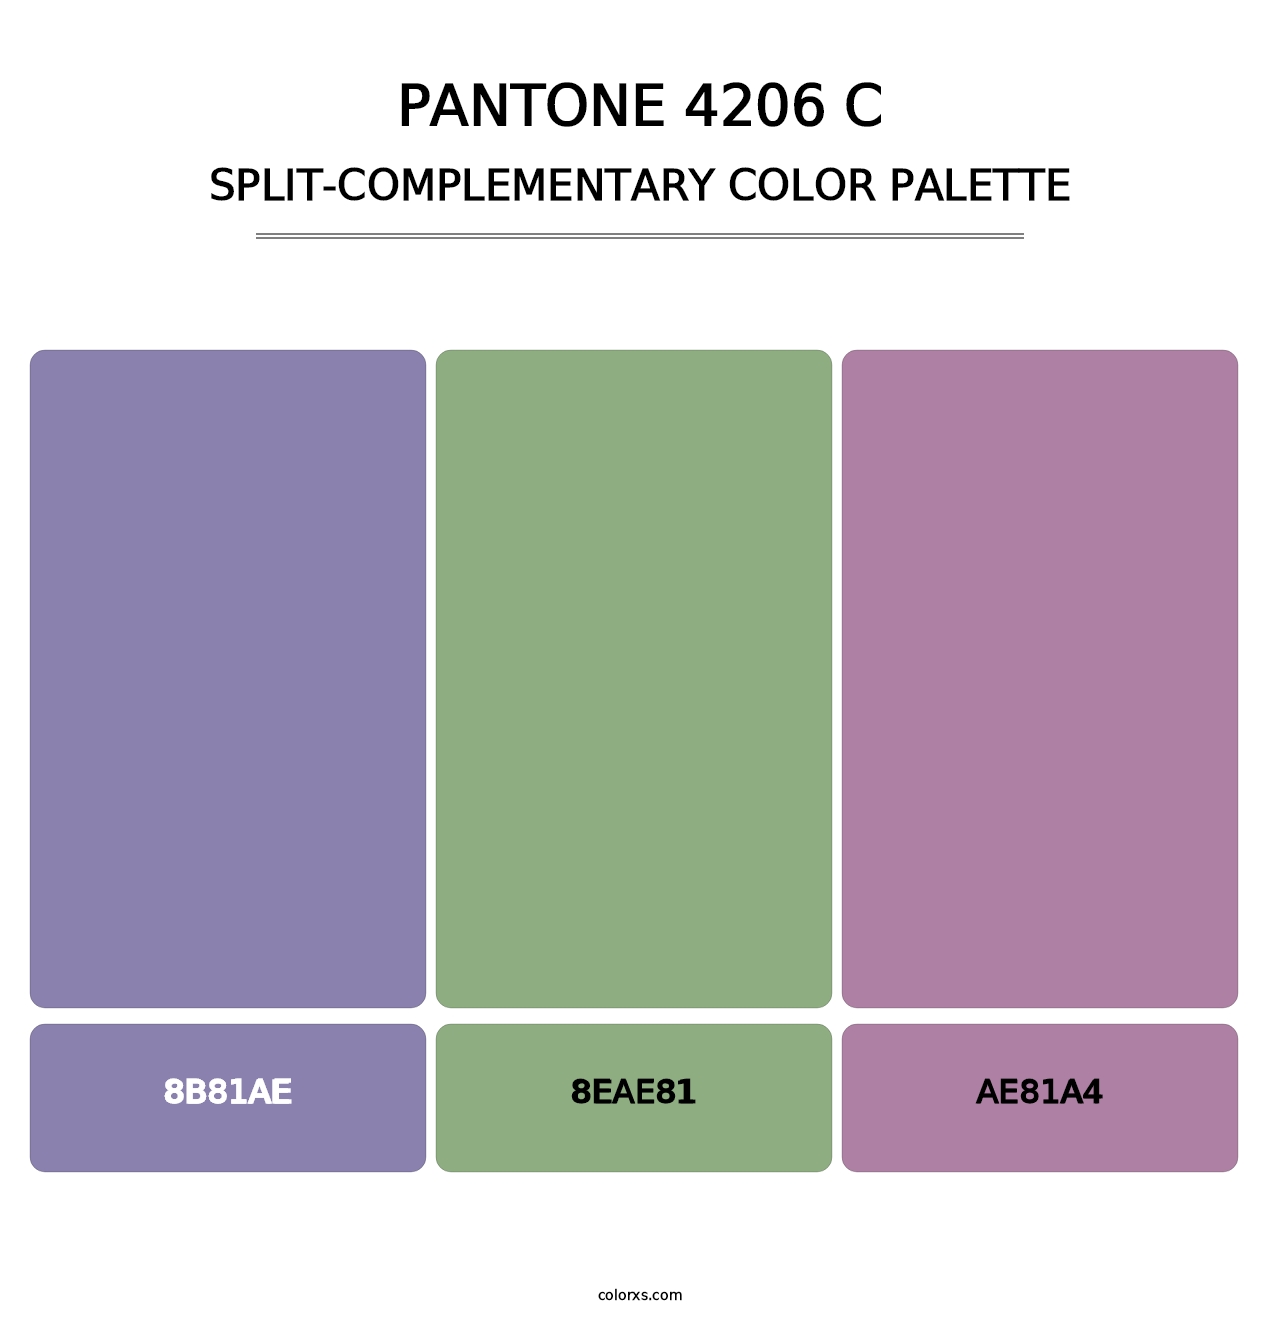 PANTONE 4206 C - Split-Complementary Color Palette